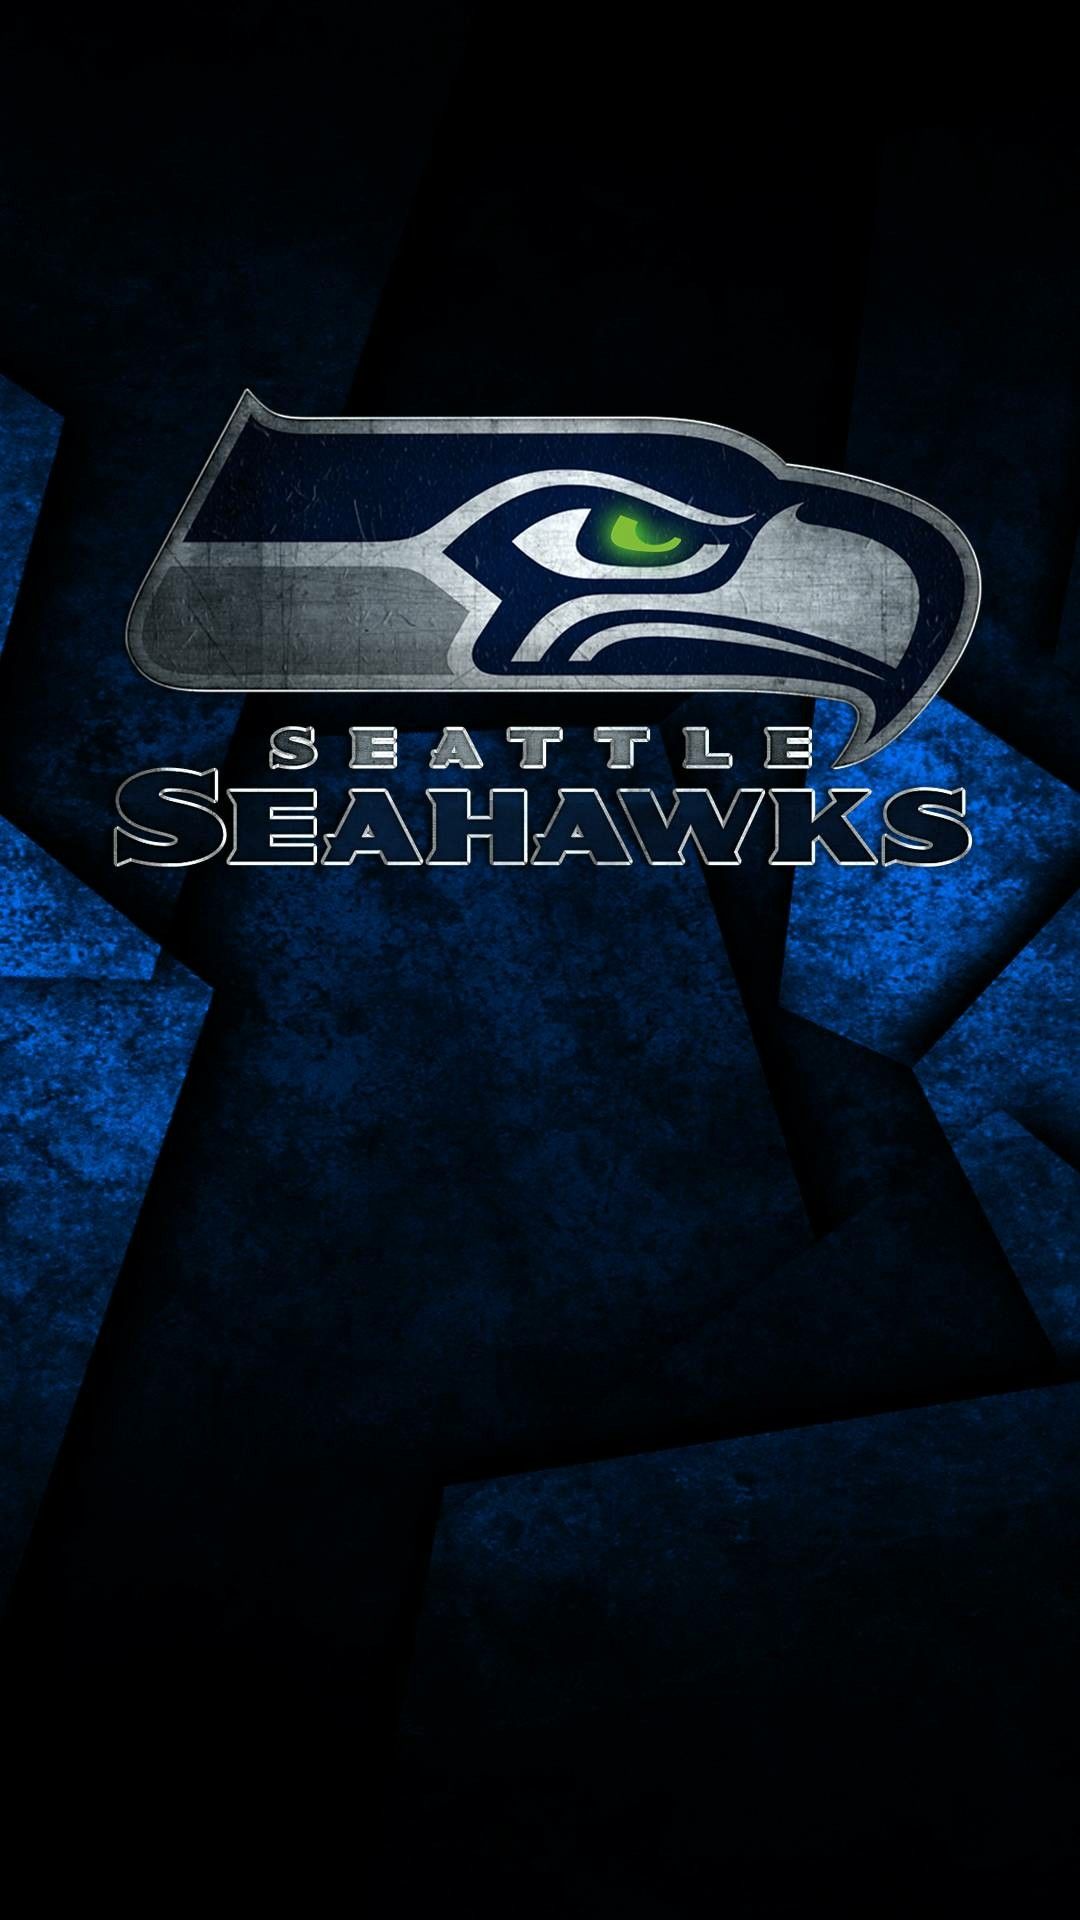 seahawks seattleseahawks Seattle seahawks logo Seattle